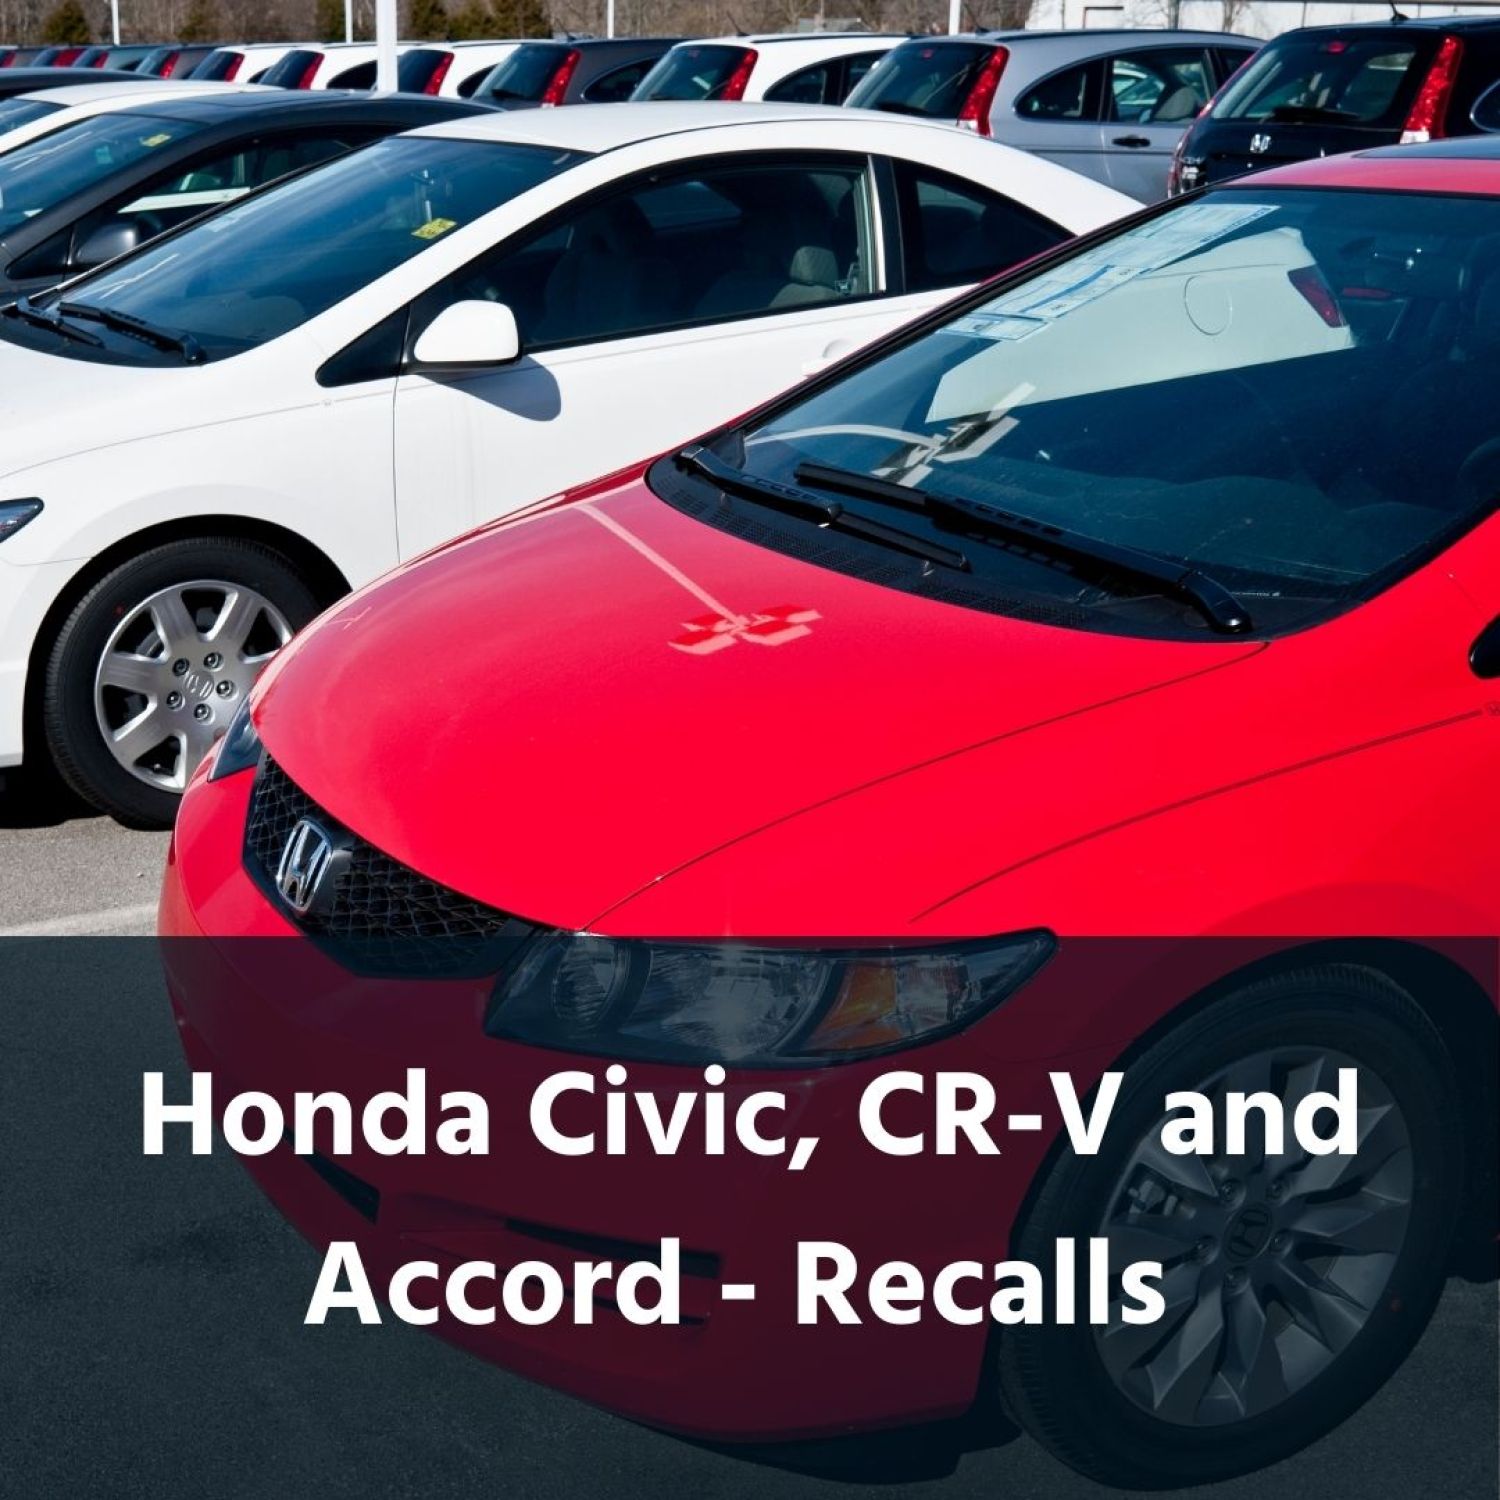 Honda Civic, CR-V and Accord recalls